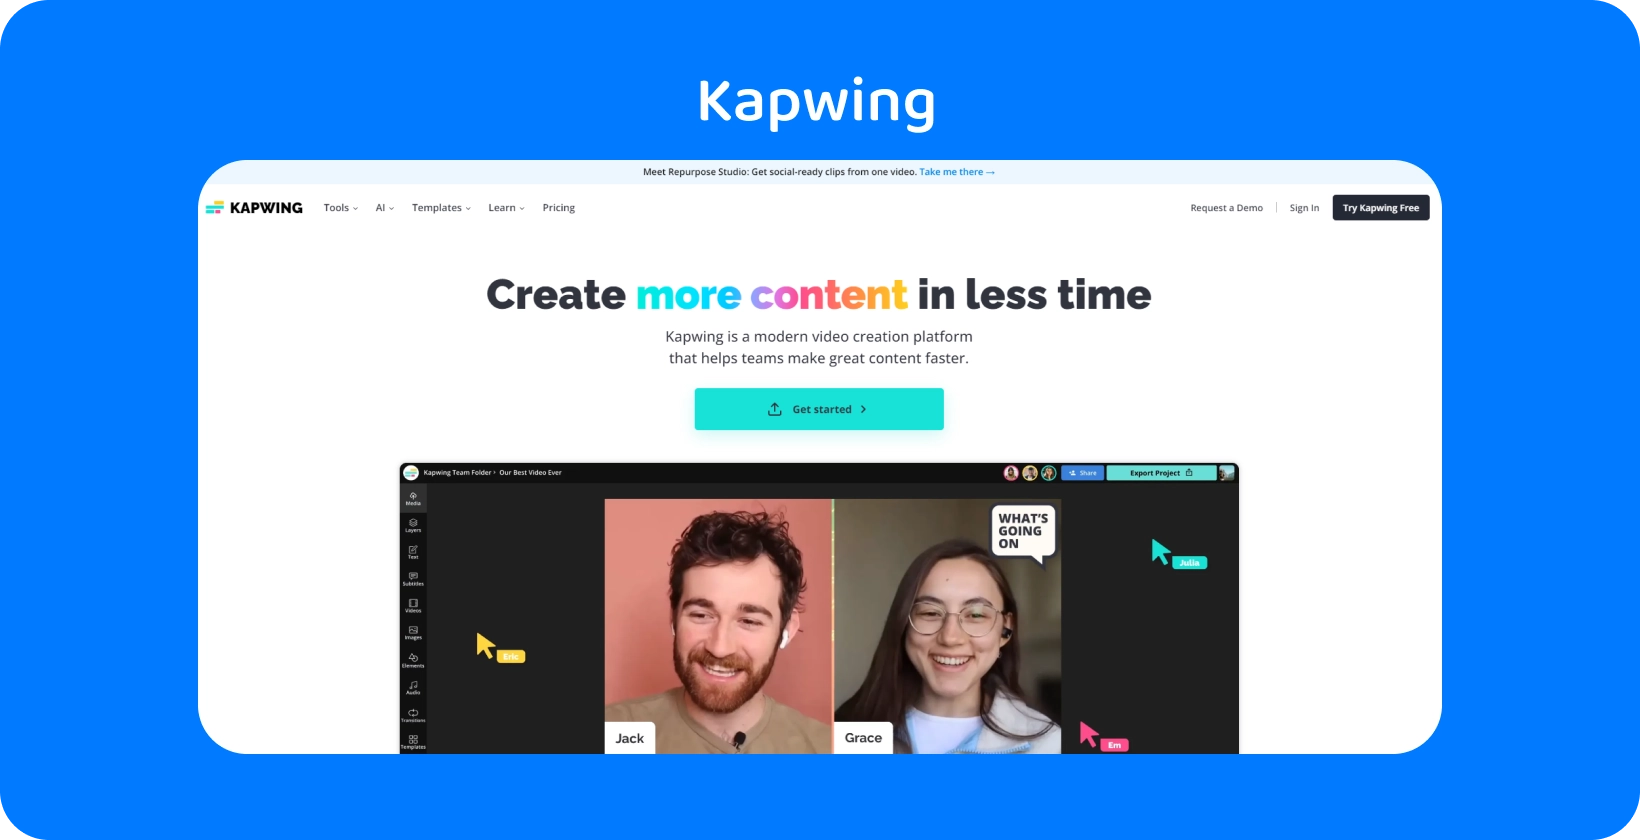 Trình chỉnh sửa phụ đề Kapwing được giới thiệu với giao diện thân thiện với người dùng, hỗ trợ các nhóm tạo nội dung hiệu quả.